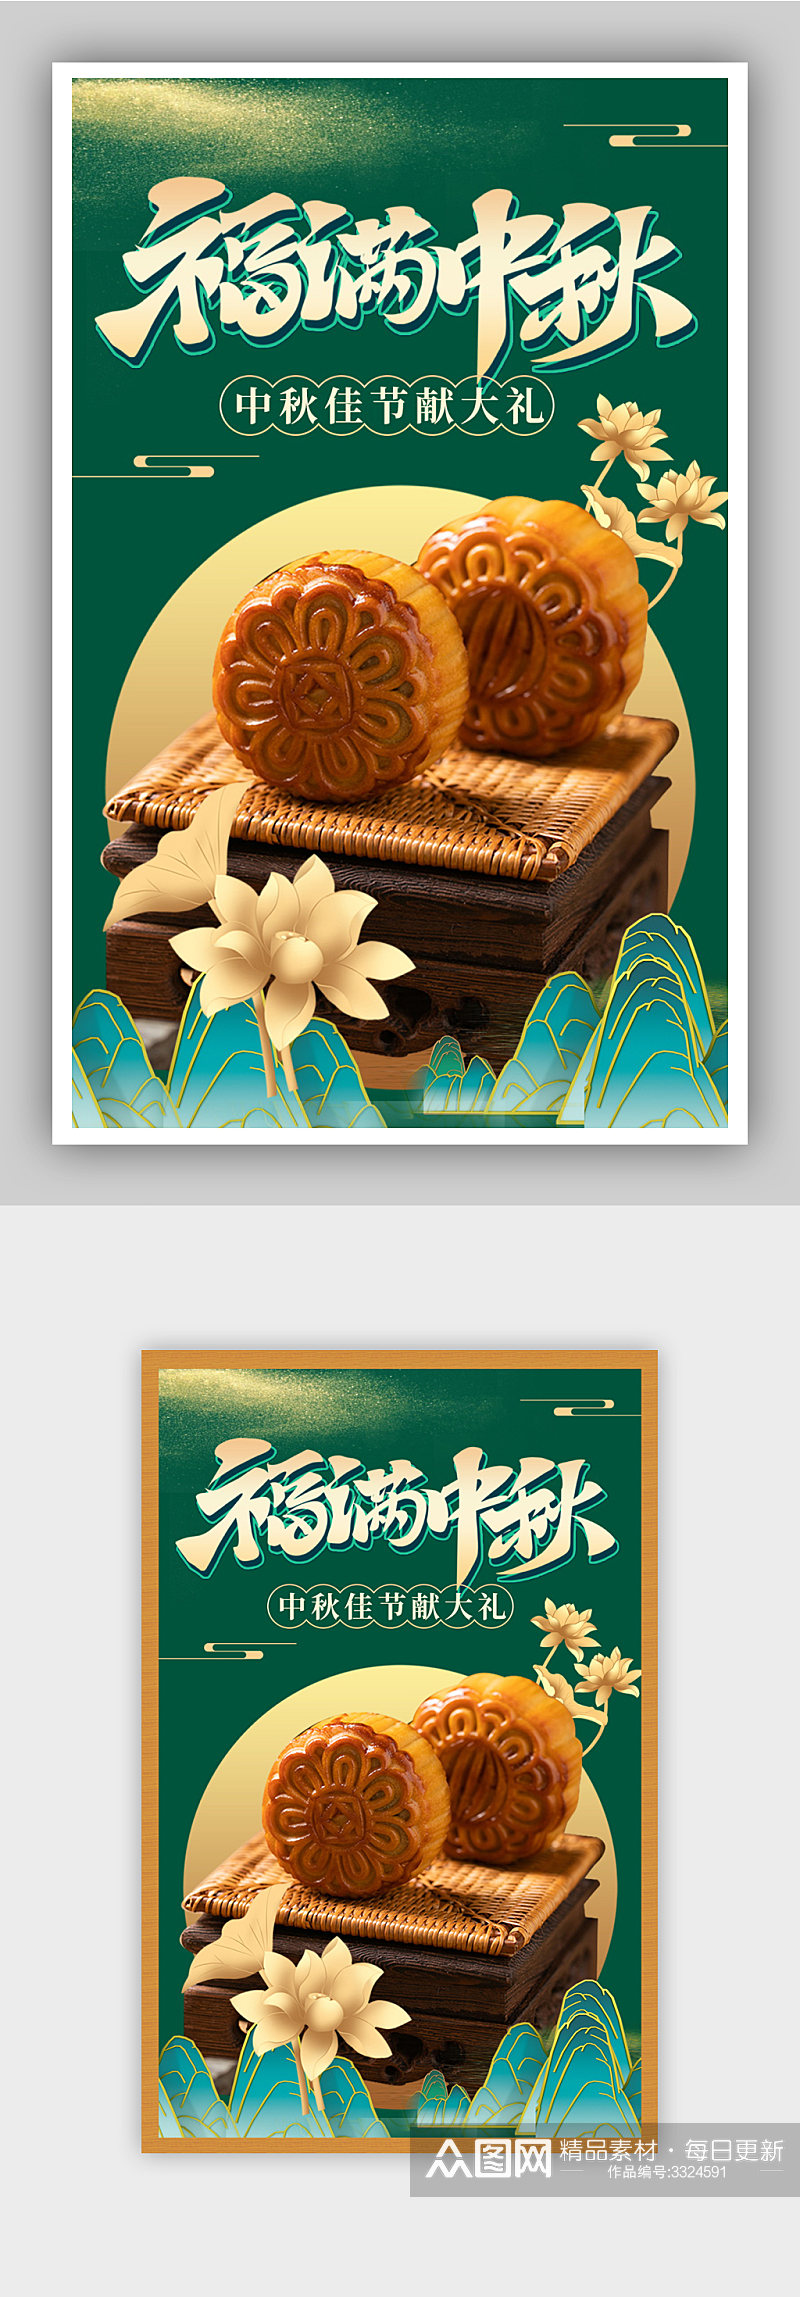 中秋节古风月饼礼盒电商海报素材